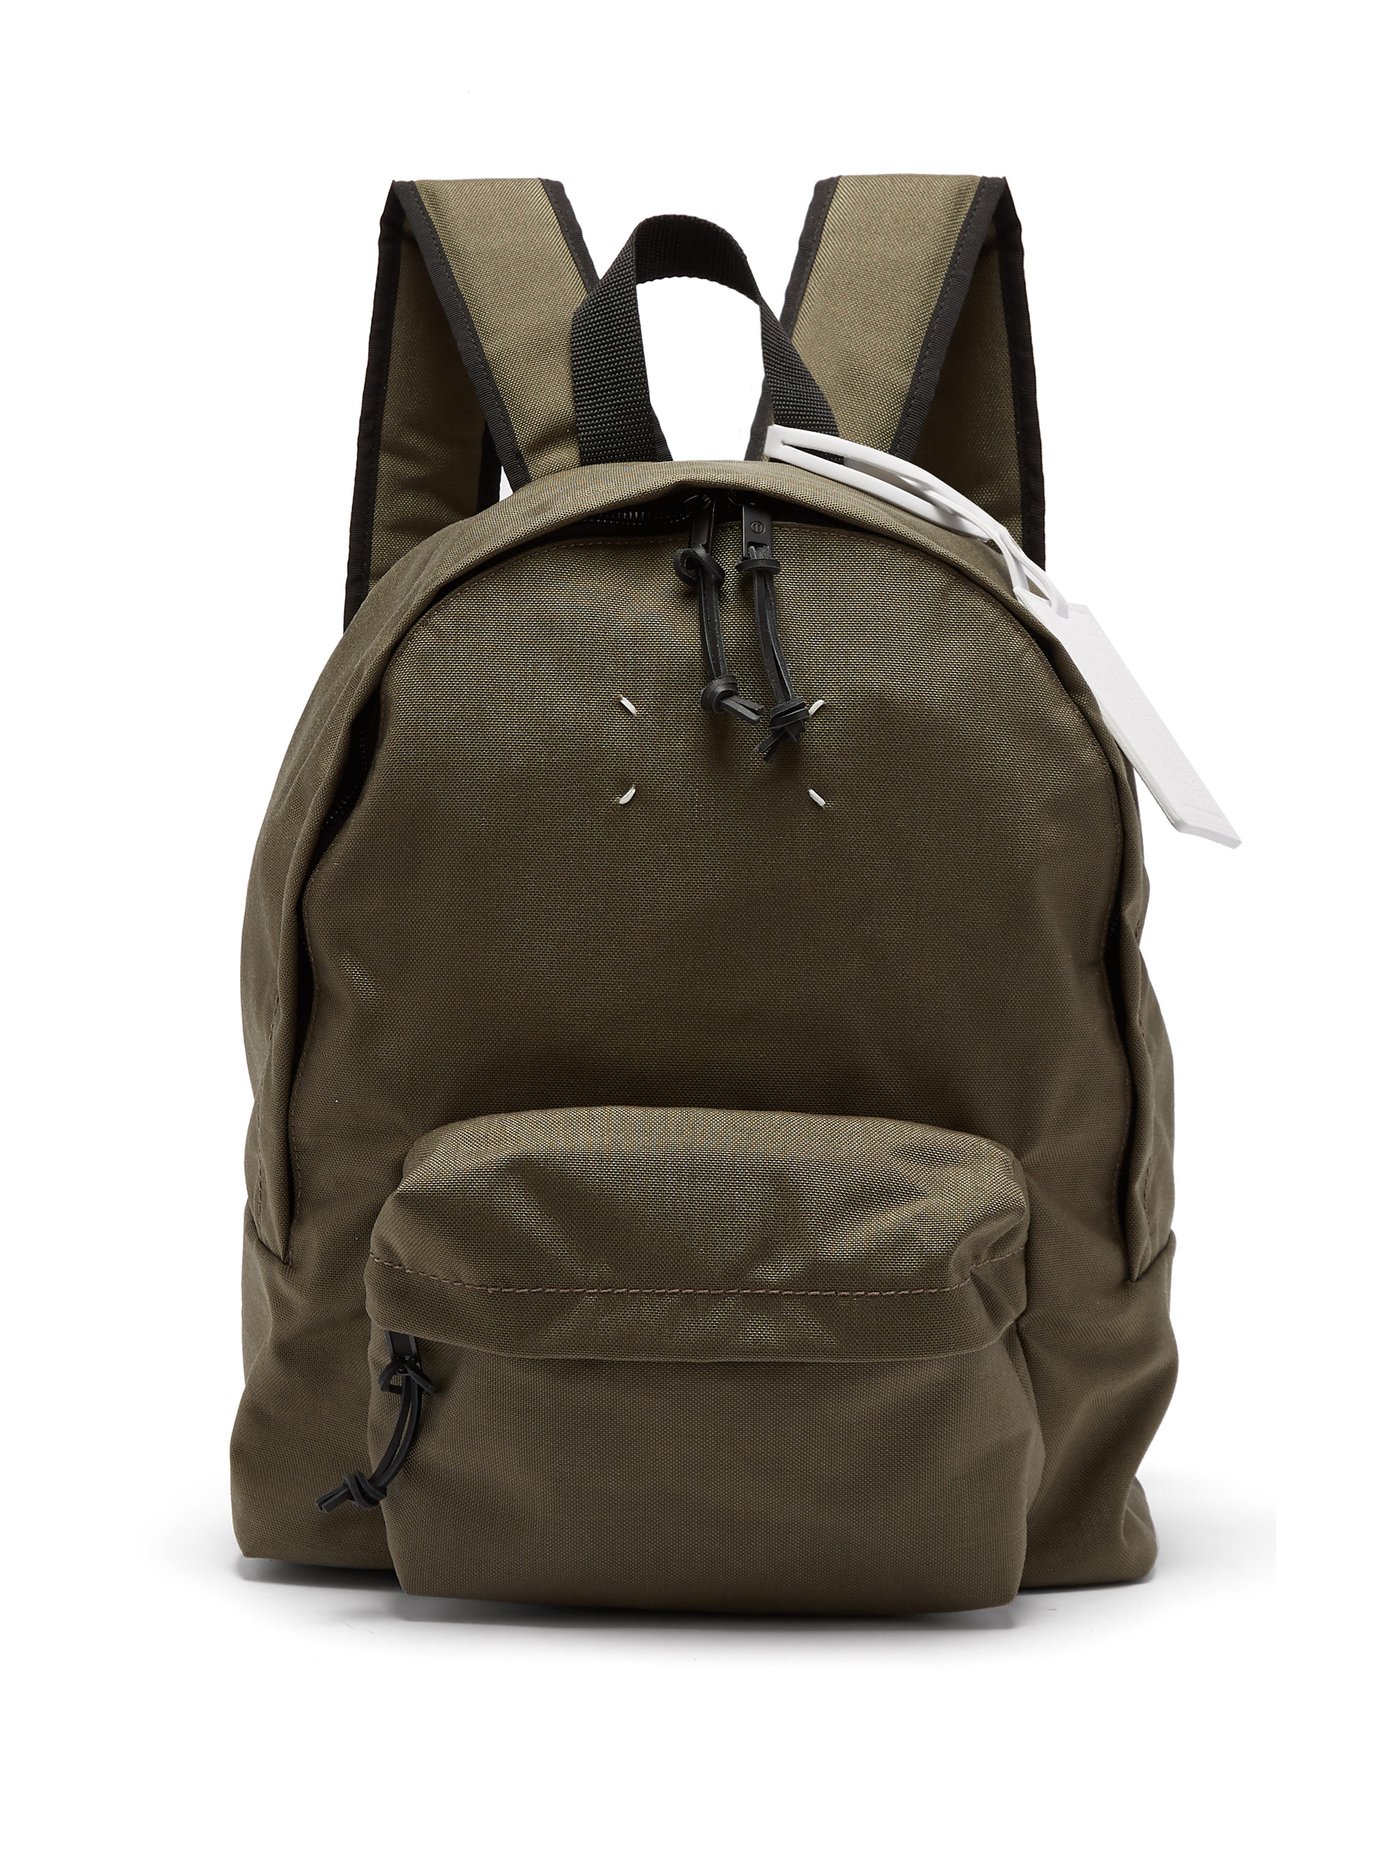 margiela backpack